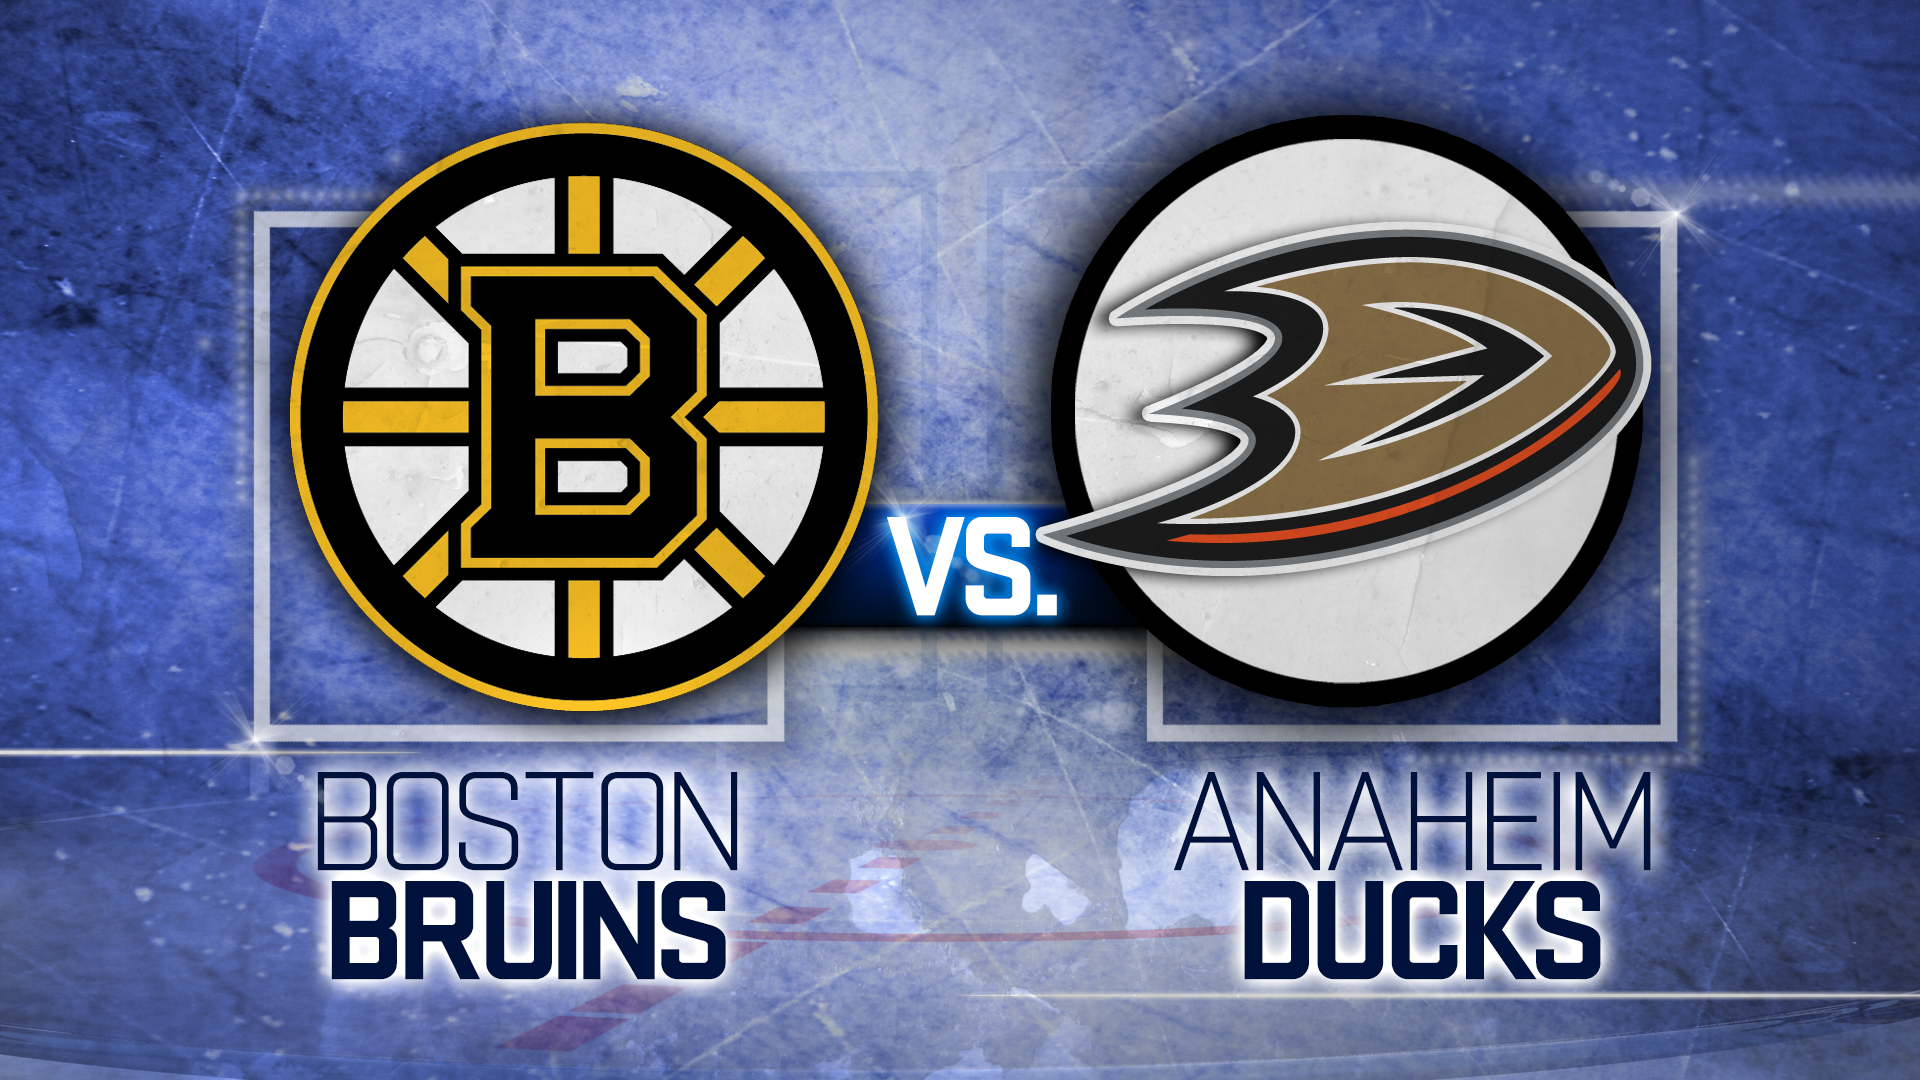 Bruins rally past Ducks, extend seasonopening win streak to five